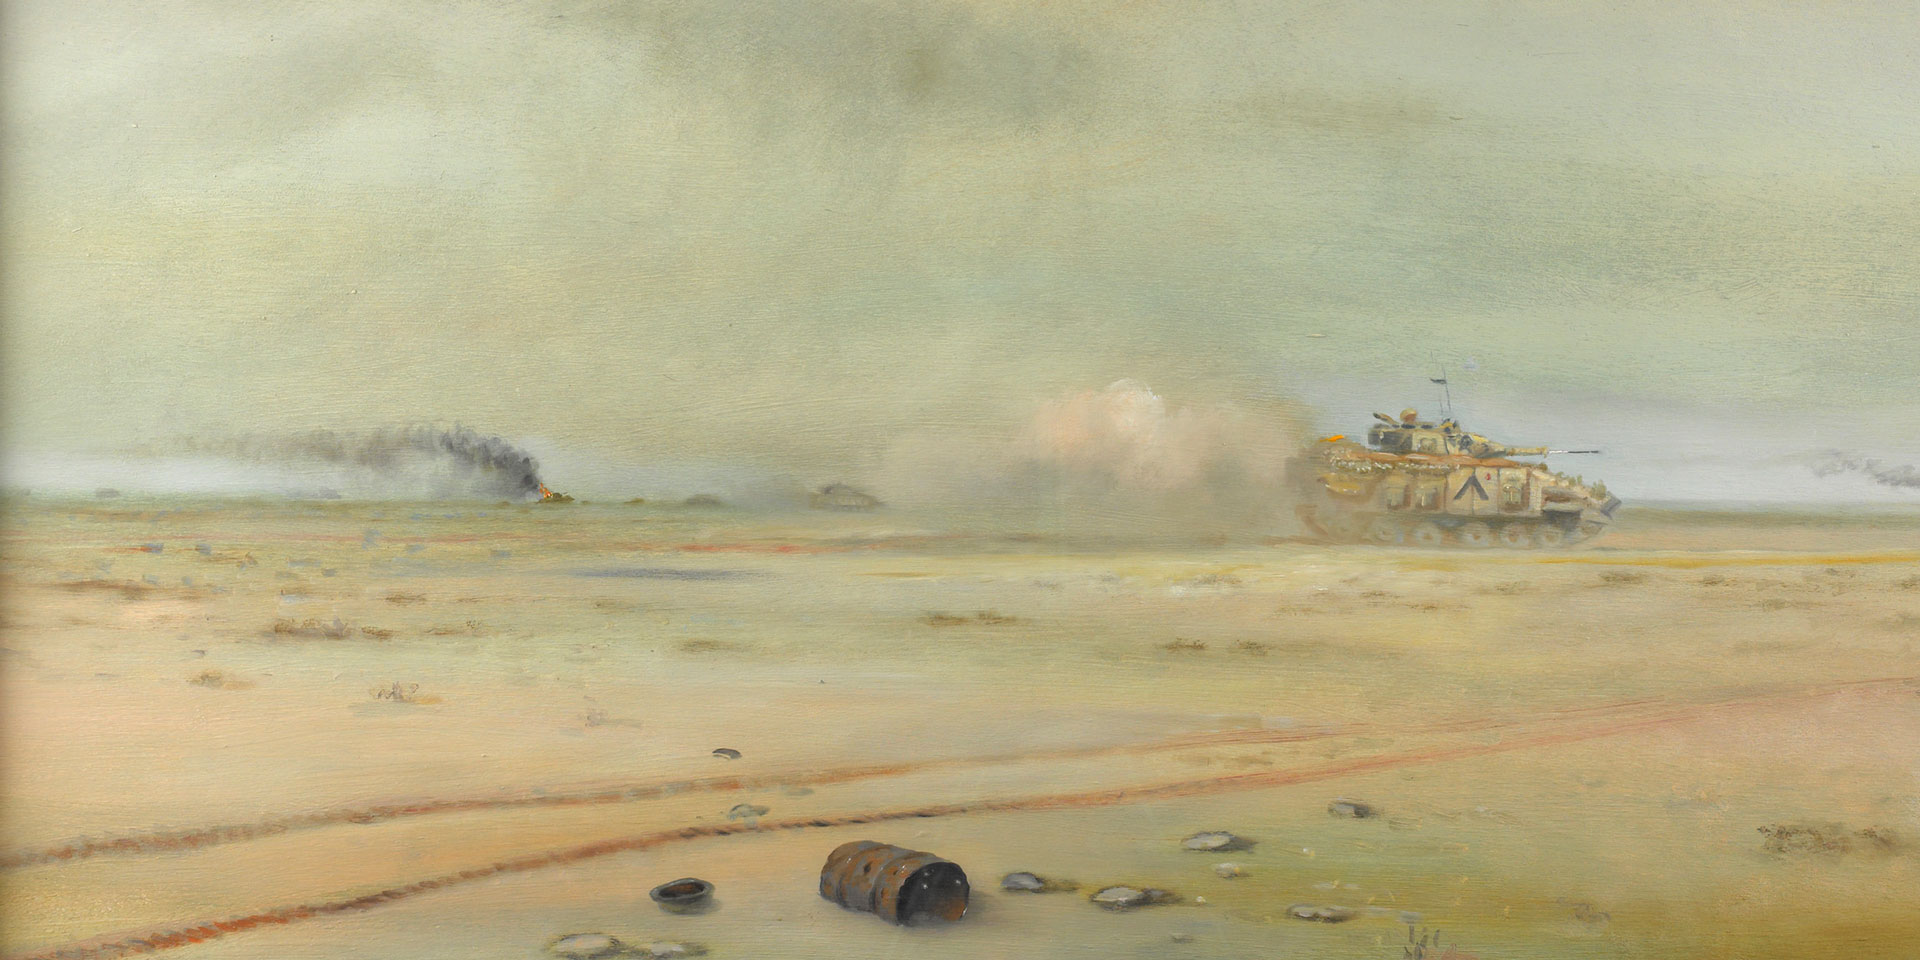 tank battles of the second gulf war